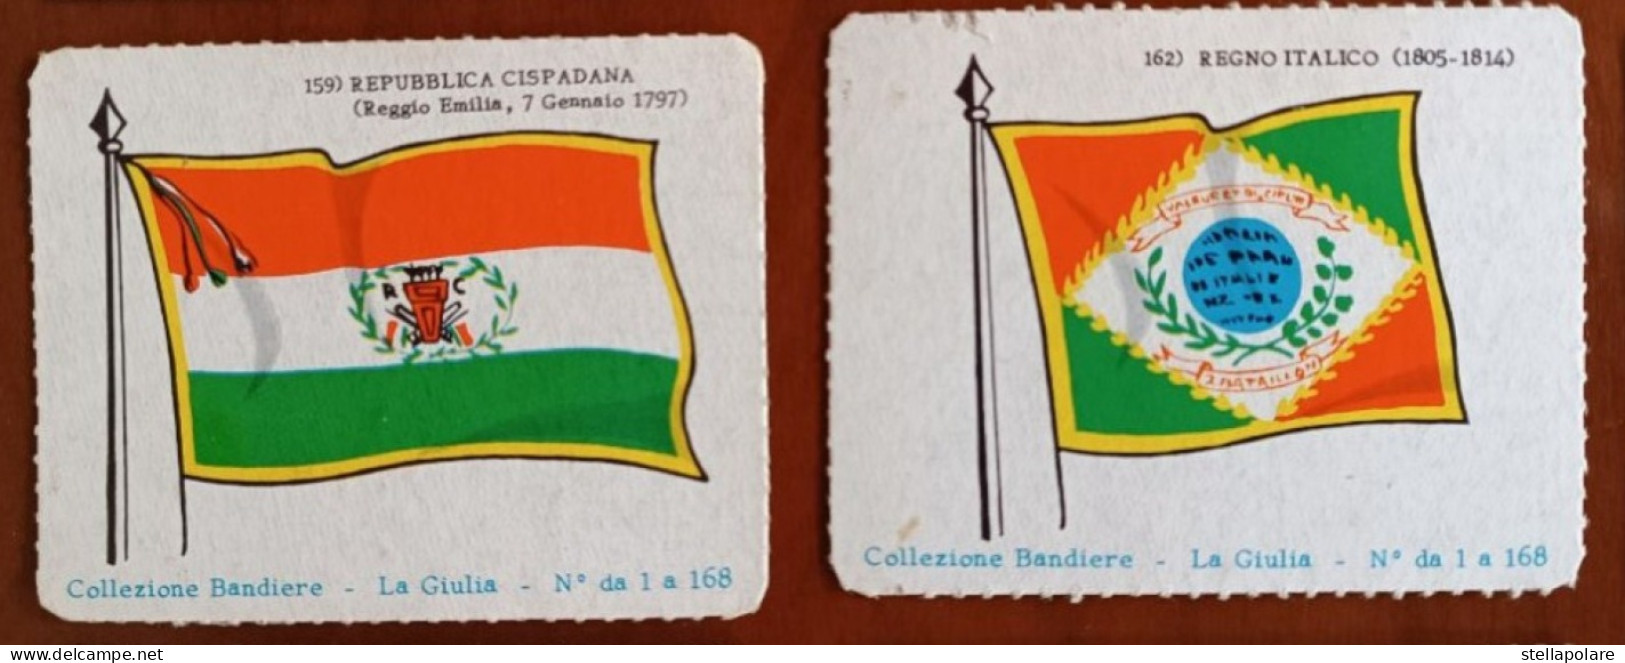 50 FIGURINE CARTONATE BUBBLE GUM  cigarettes "BANDIERE" LA GIULIA GORIZIA chewing chicle flags